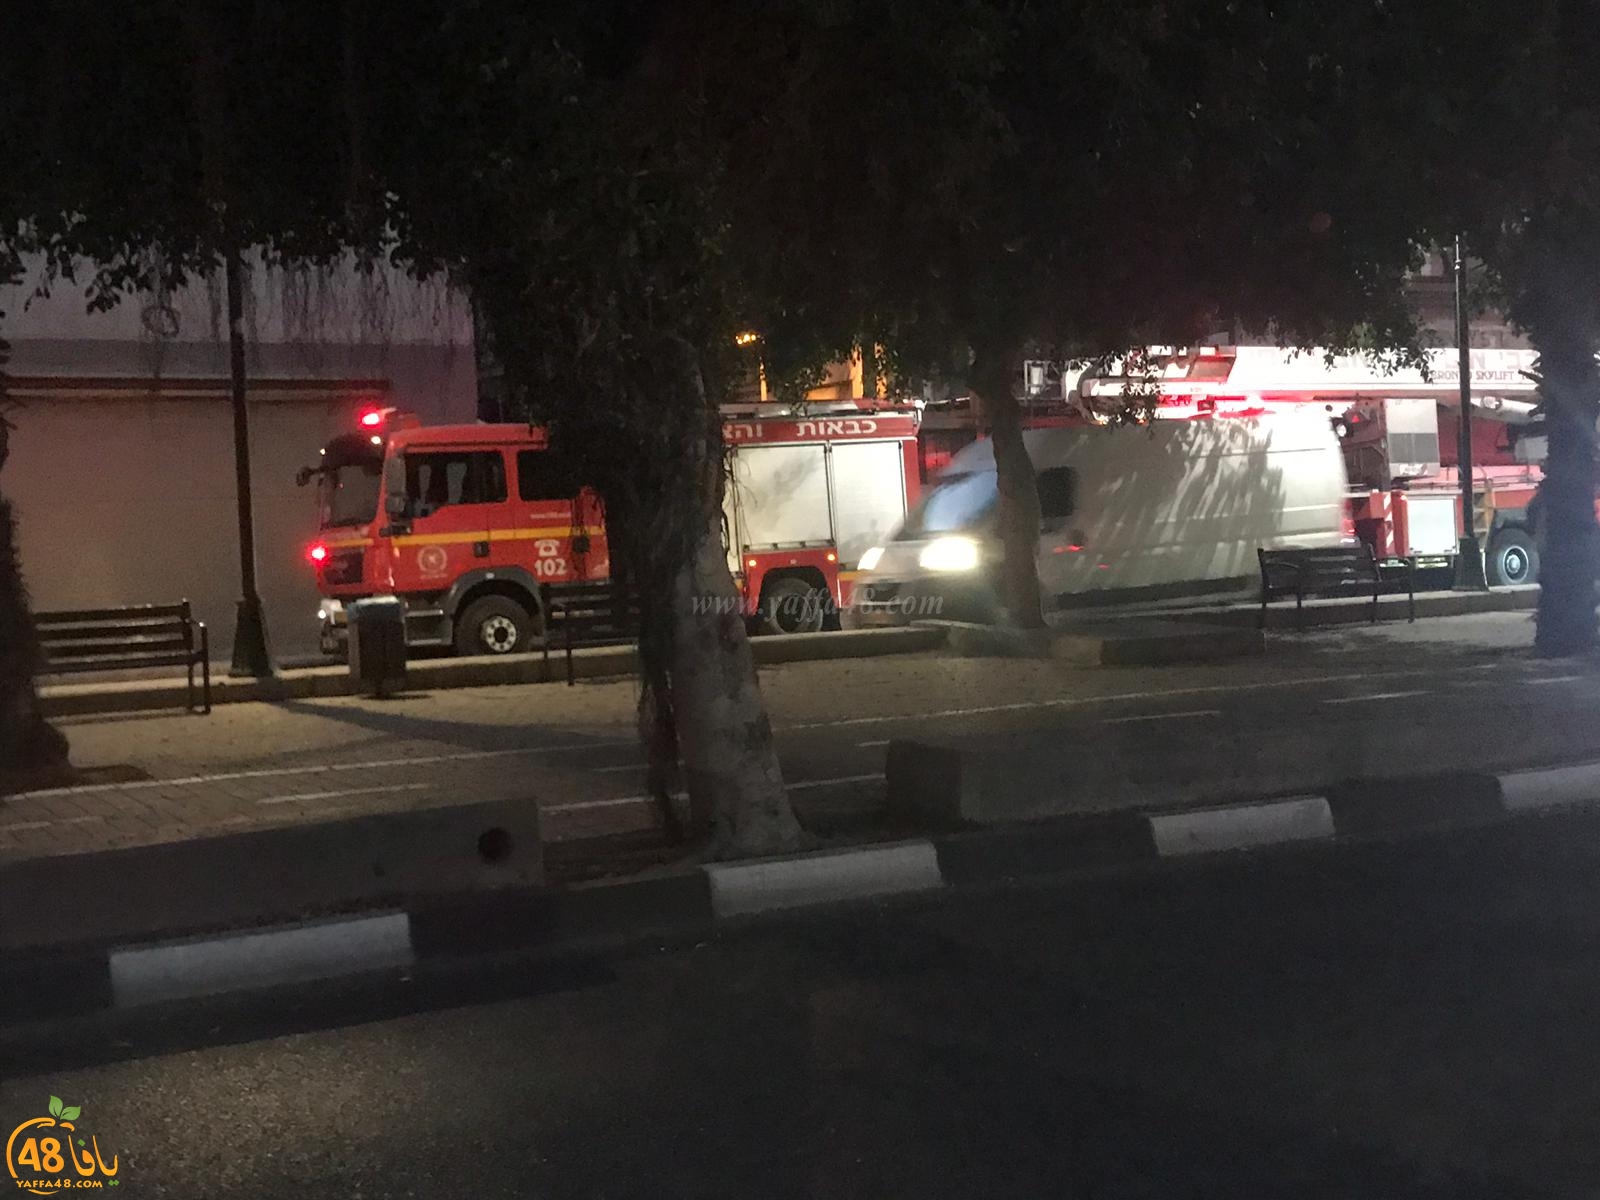  فيديو: حريق داخل مبنى مهجور في يافا دون وقوع اصابات